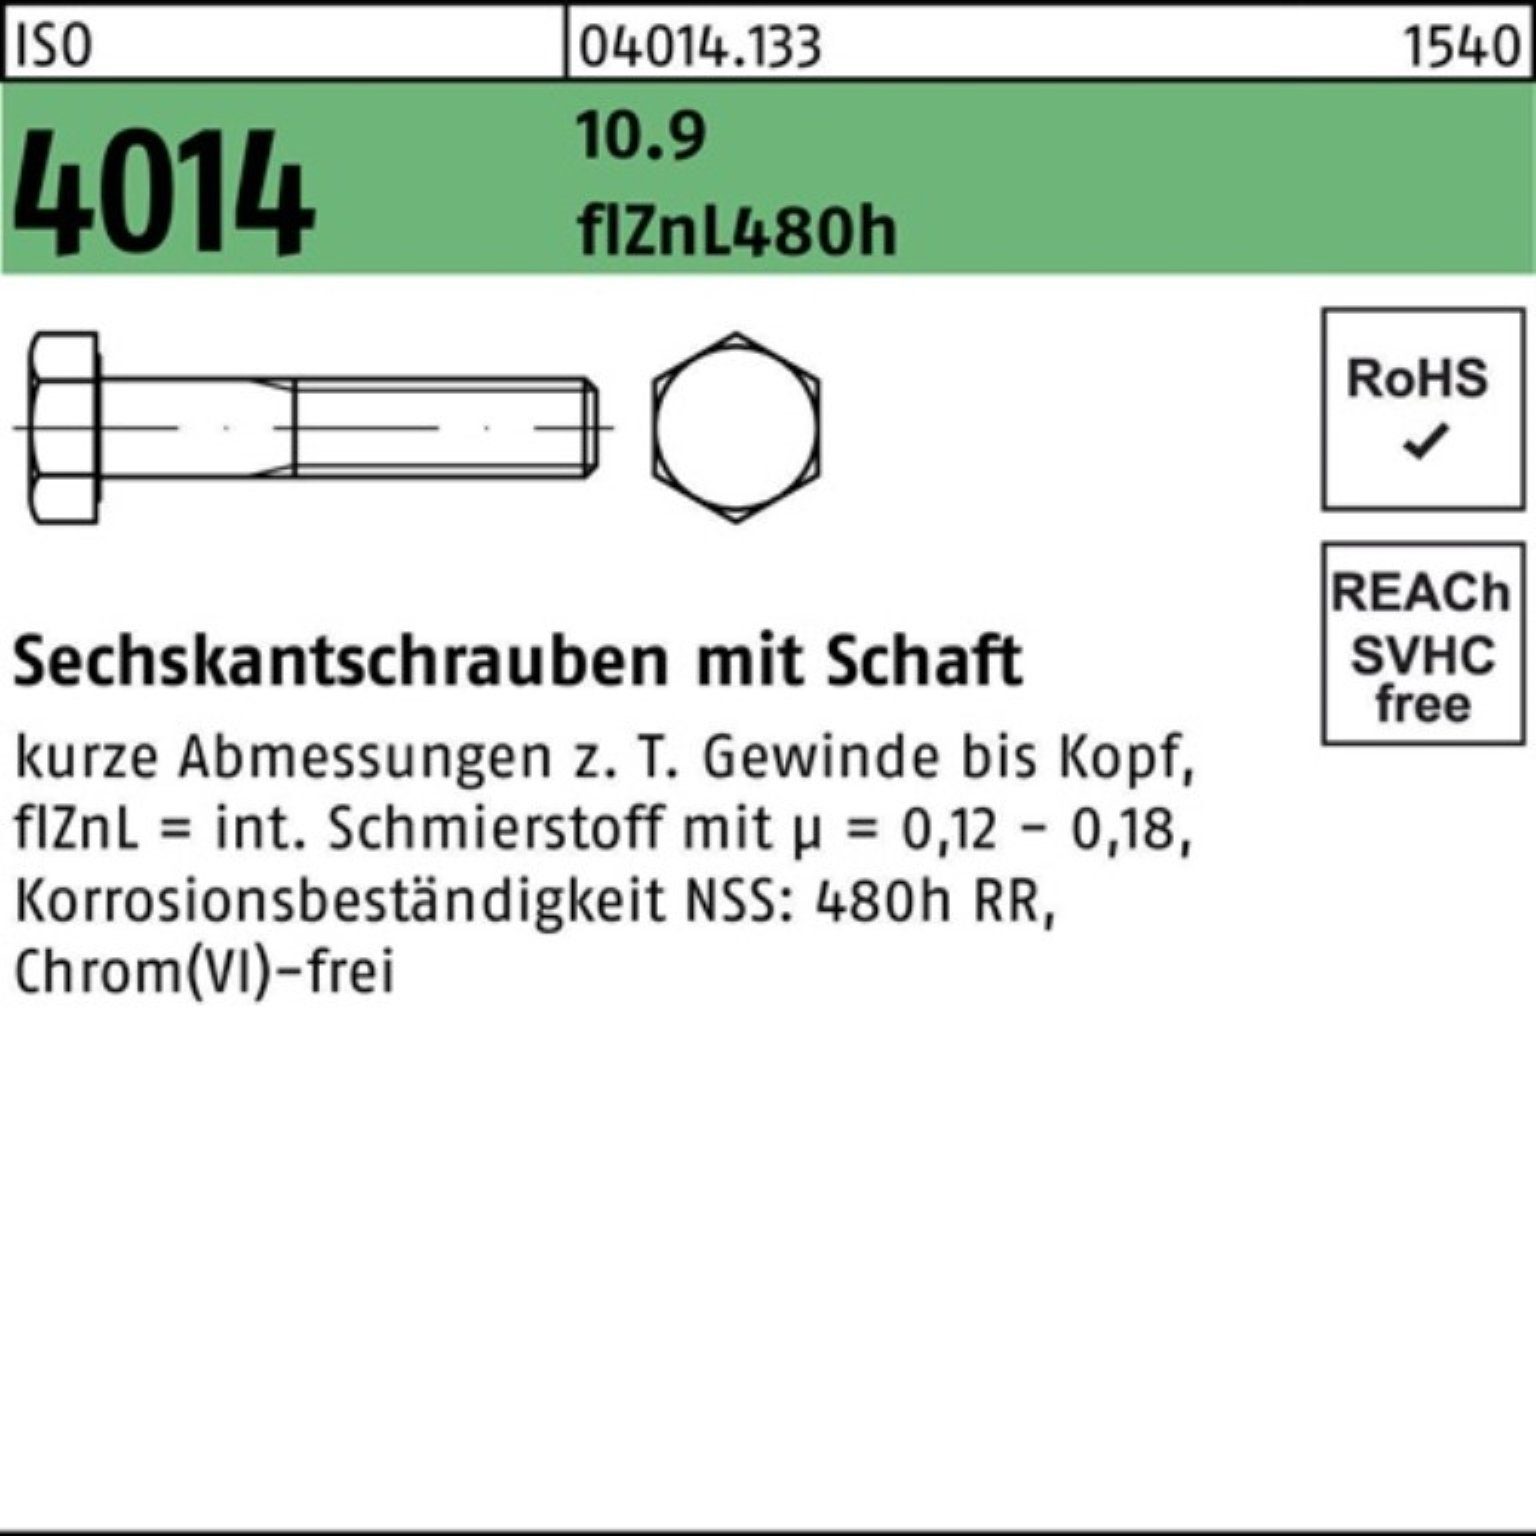 Schaft Bufab 10.9 4014 Pack Sechskantschraube M20x Sechskantschraube zinklamelle 100er 100 ISO